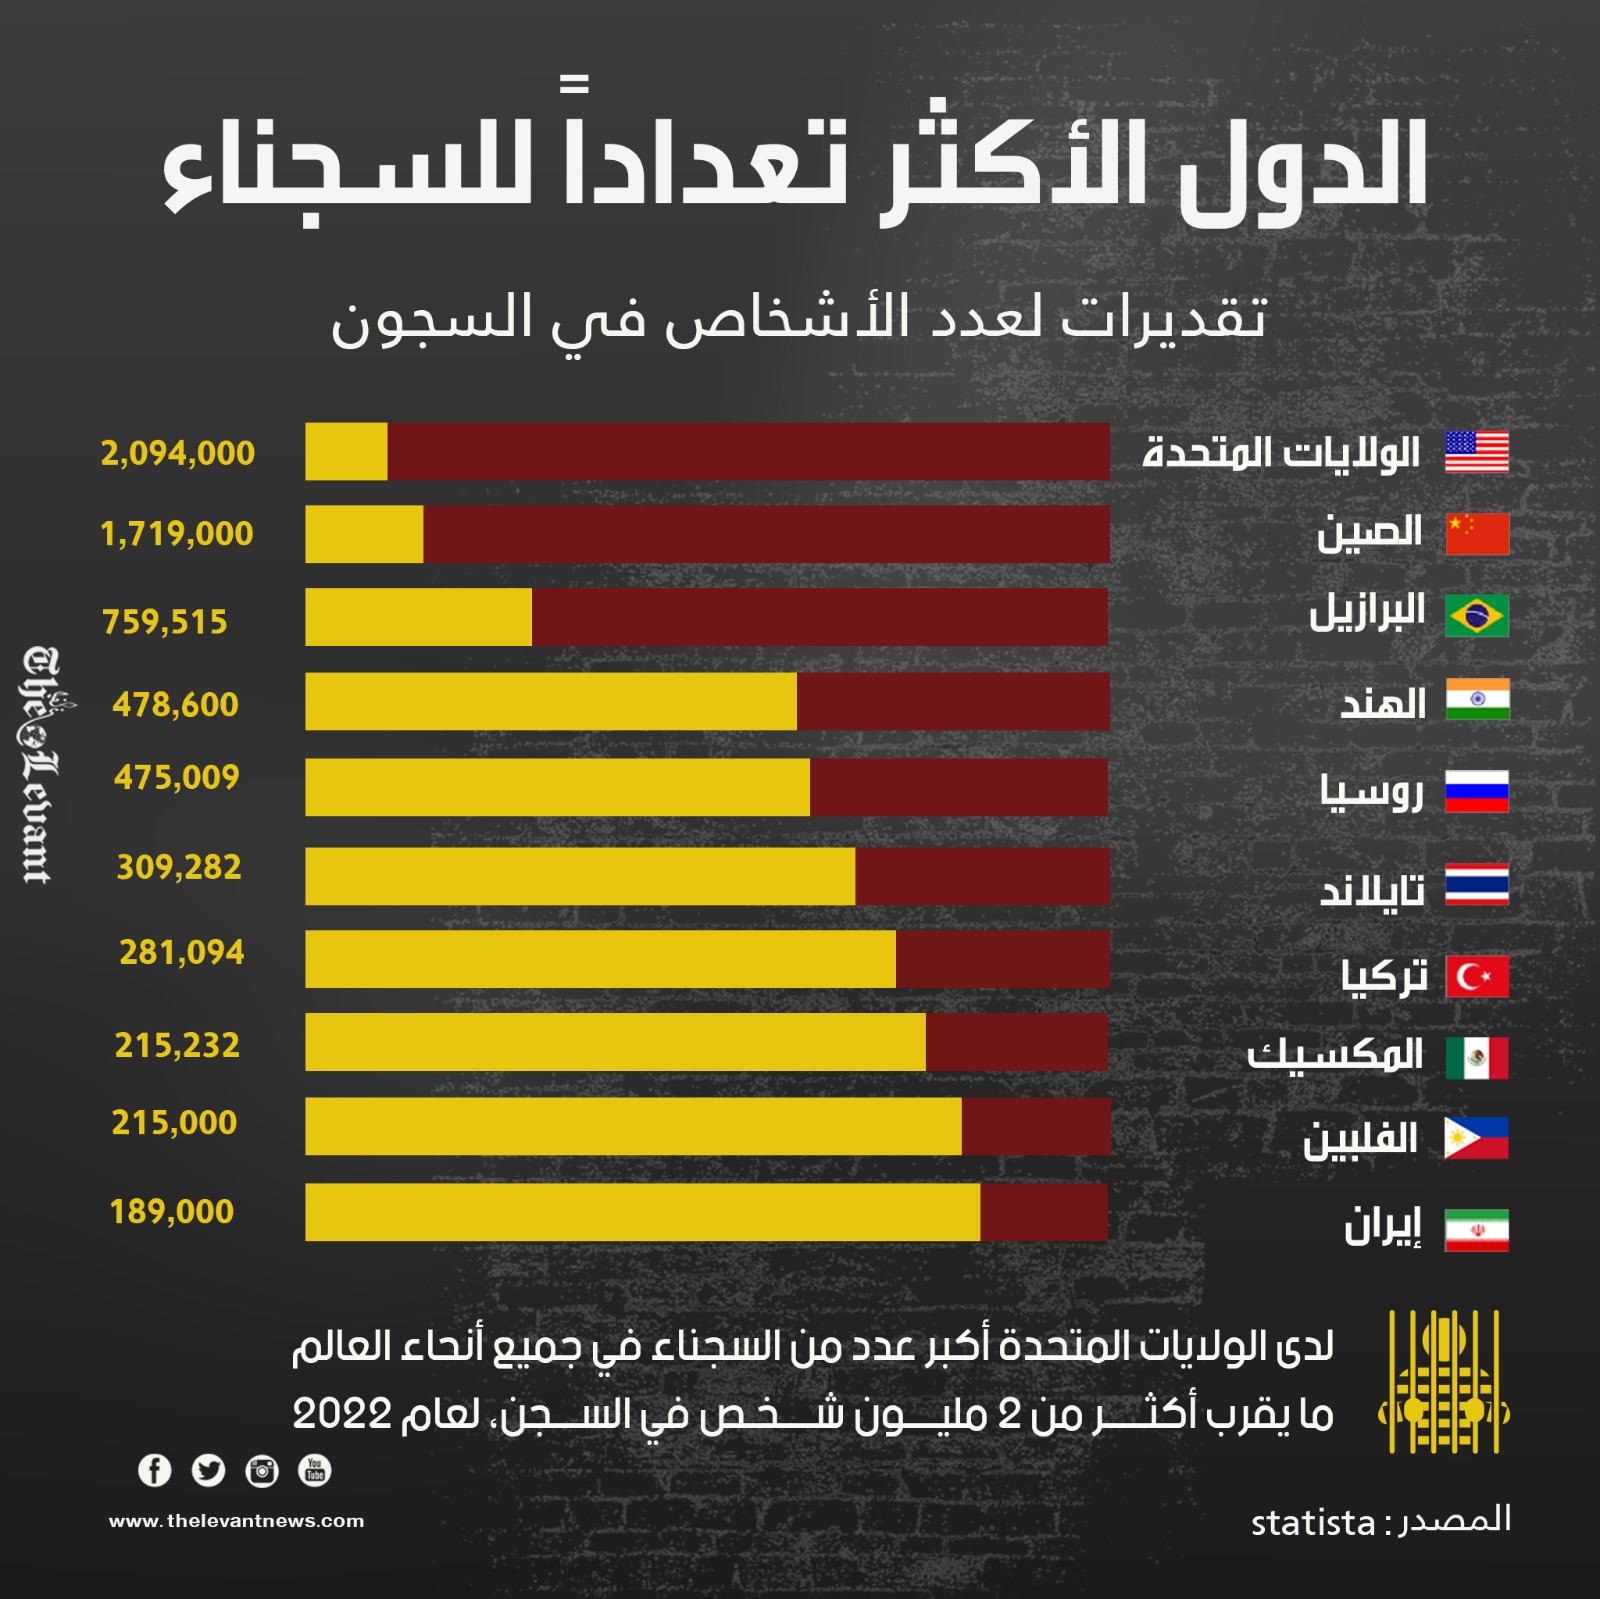 الدول الأكثر تعداداً للسجناء في العالم، لعام 2022